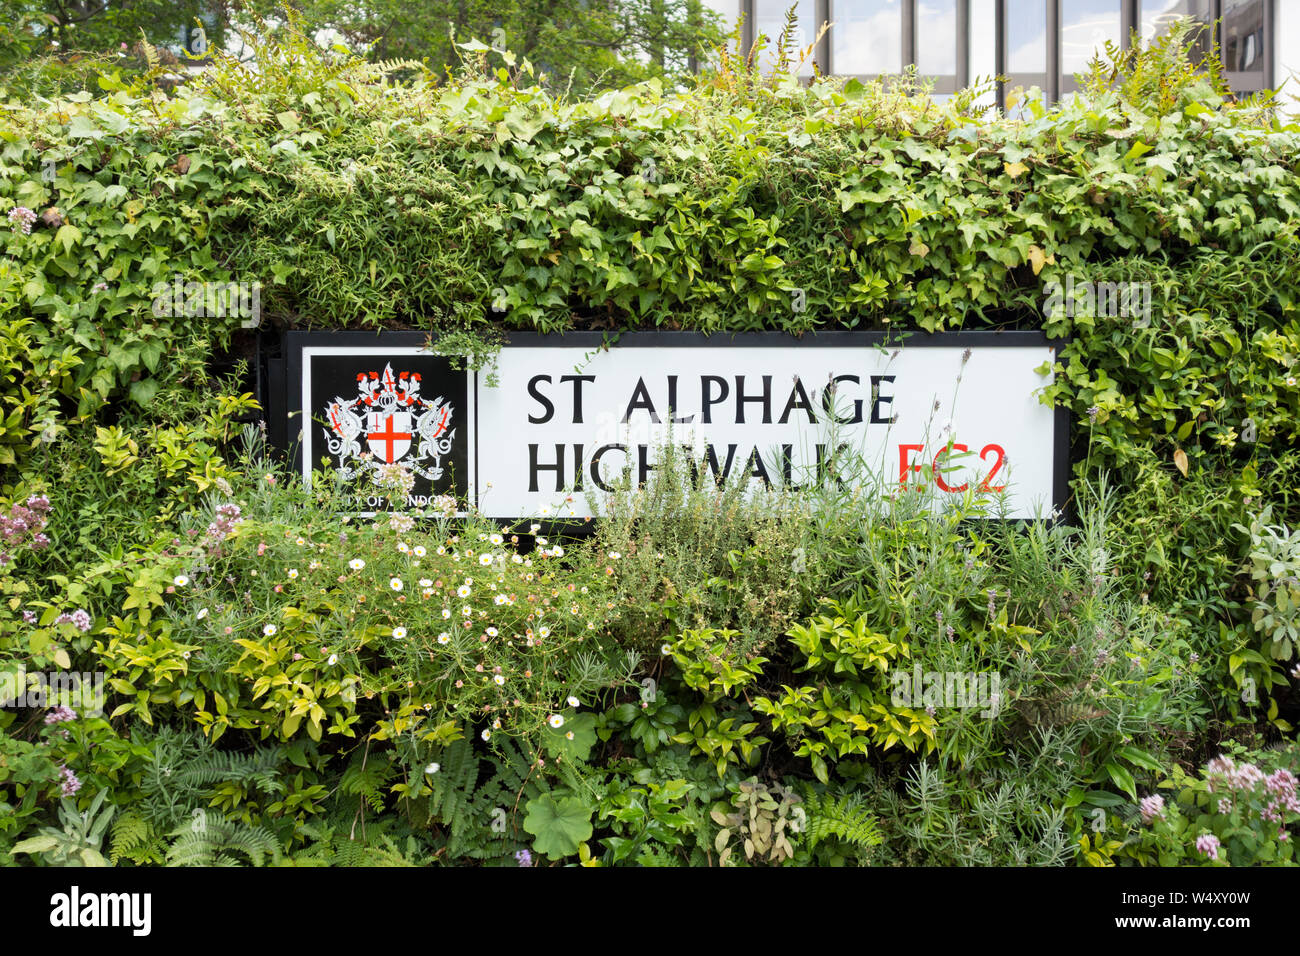 Le bosquet entourant St Alphage Highwalk street sign, London, EC2, UK Banque D'Images